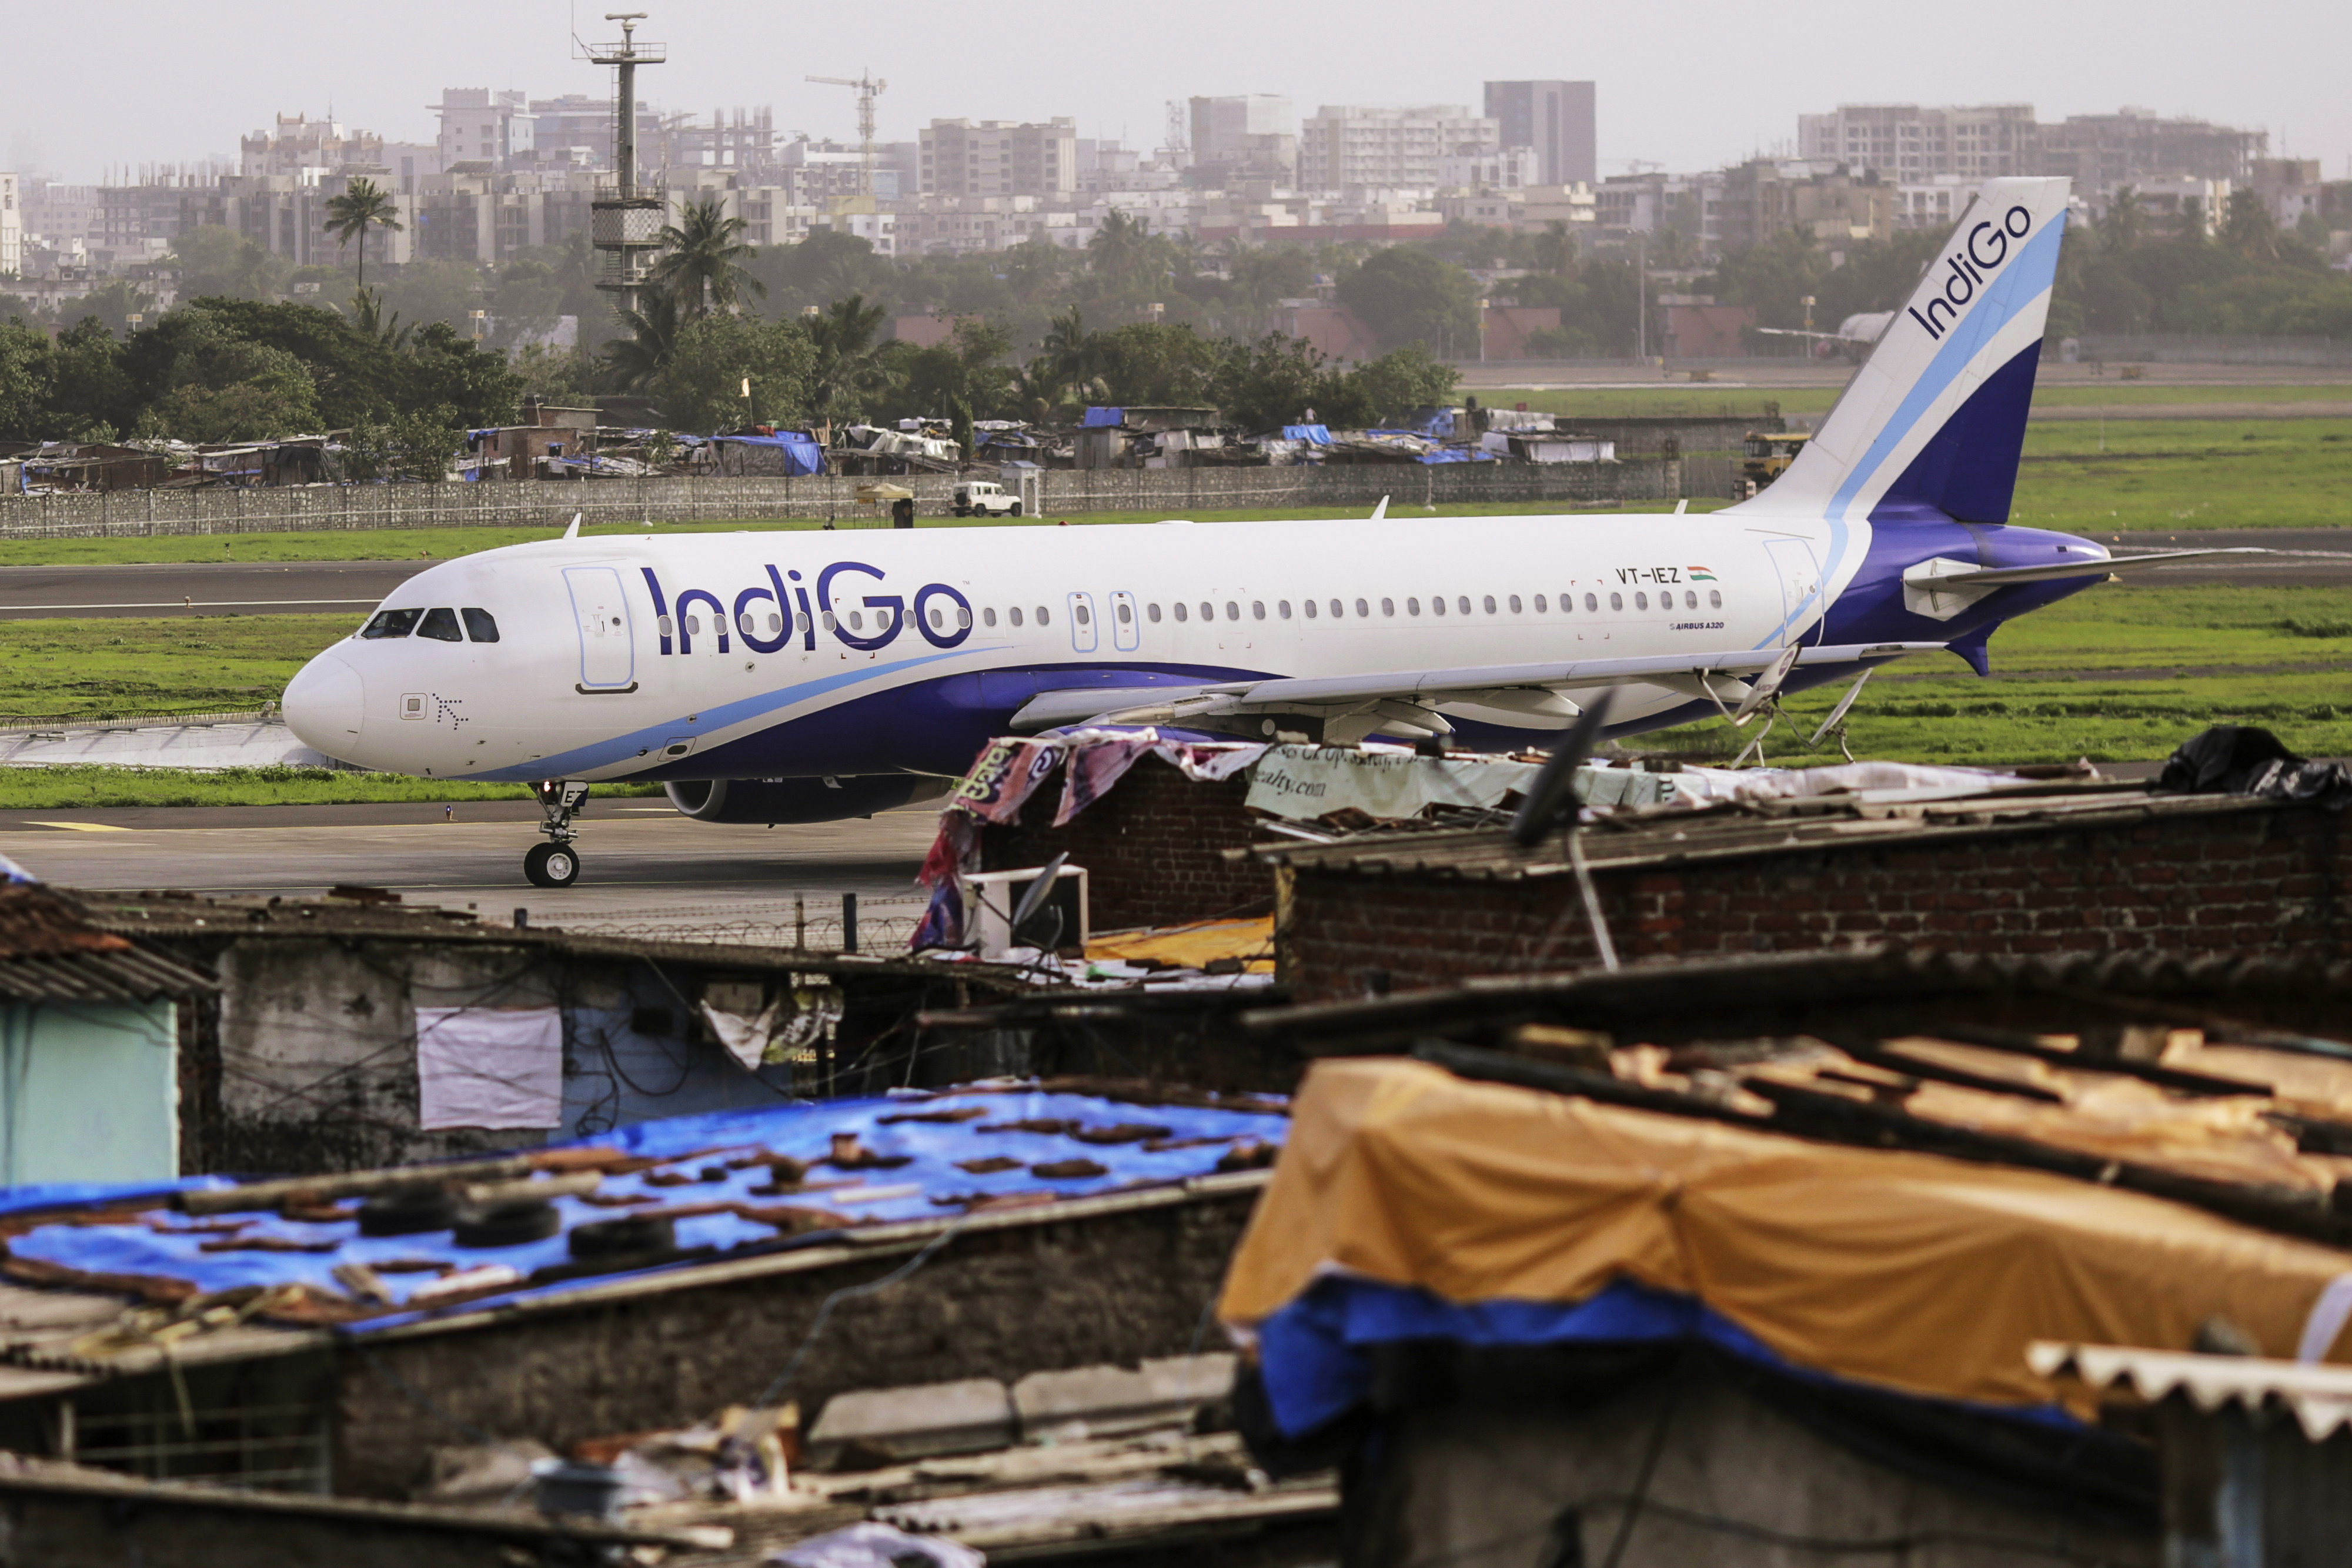 Massive delays as Mumbai airport shut for repair five hours